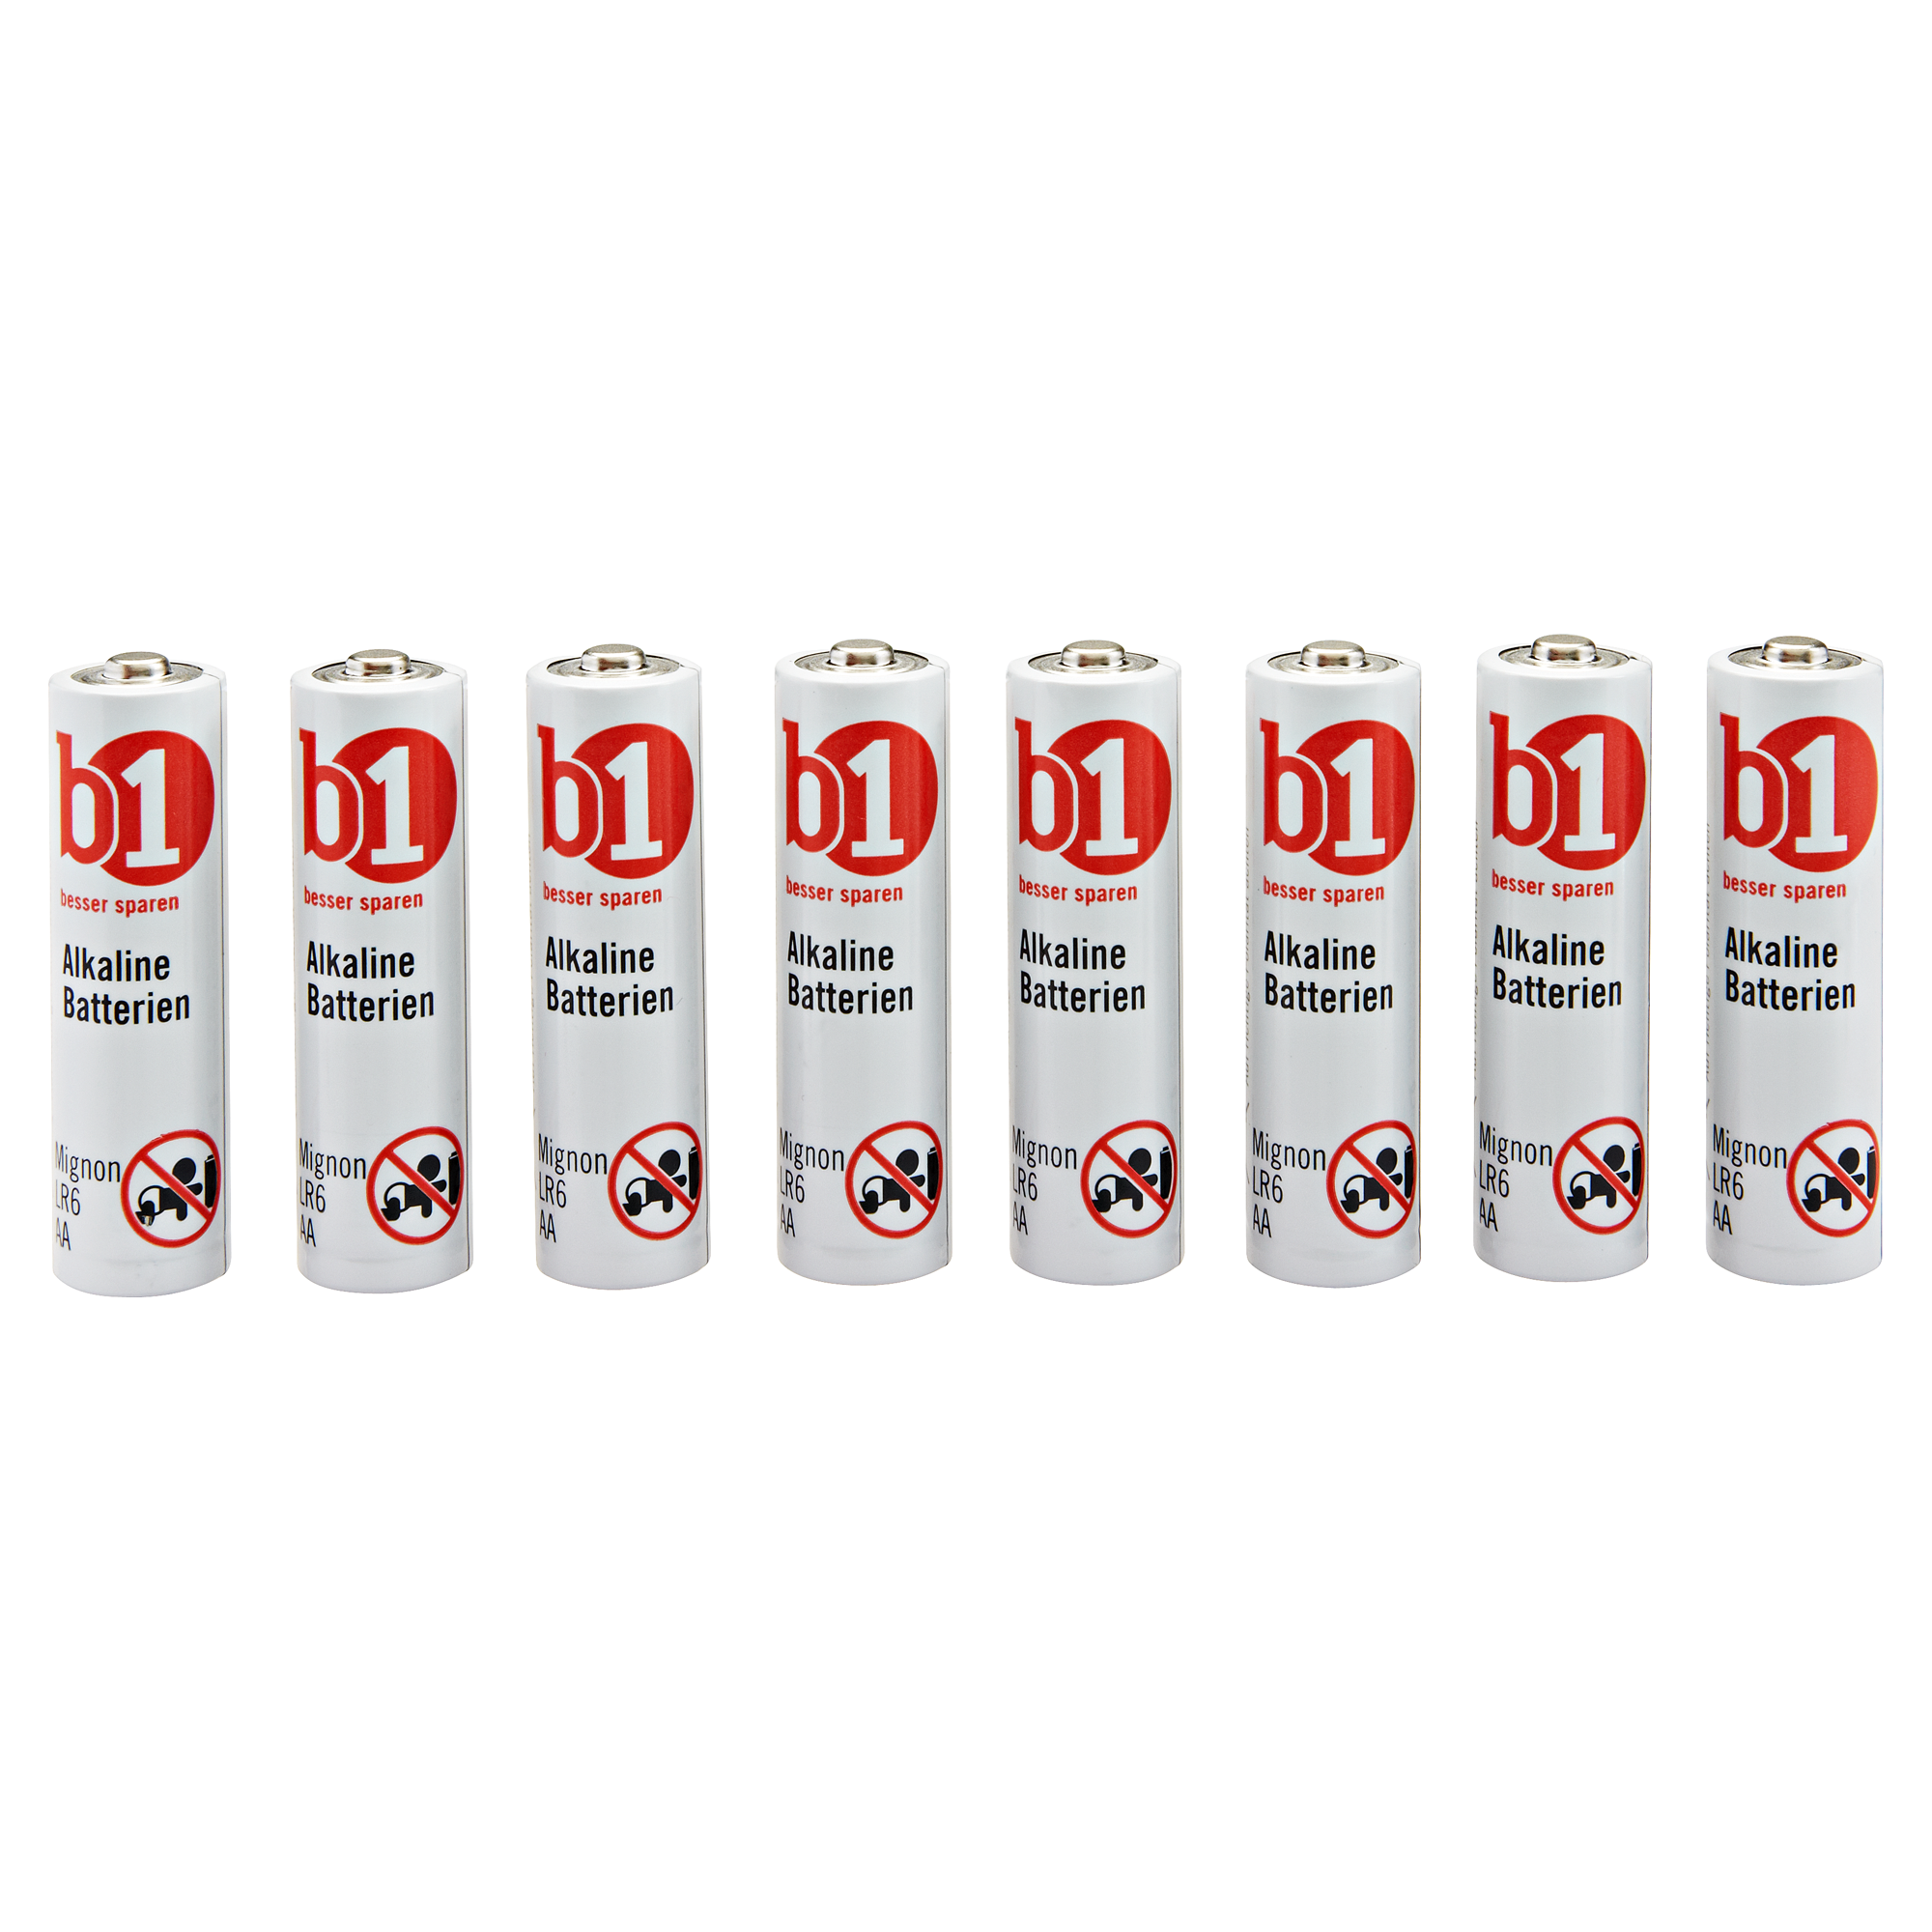 Mignonbatterien 8er-Pack + product picture